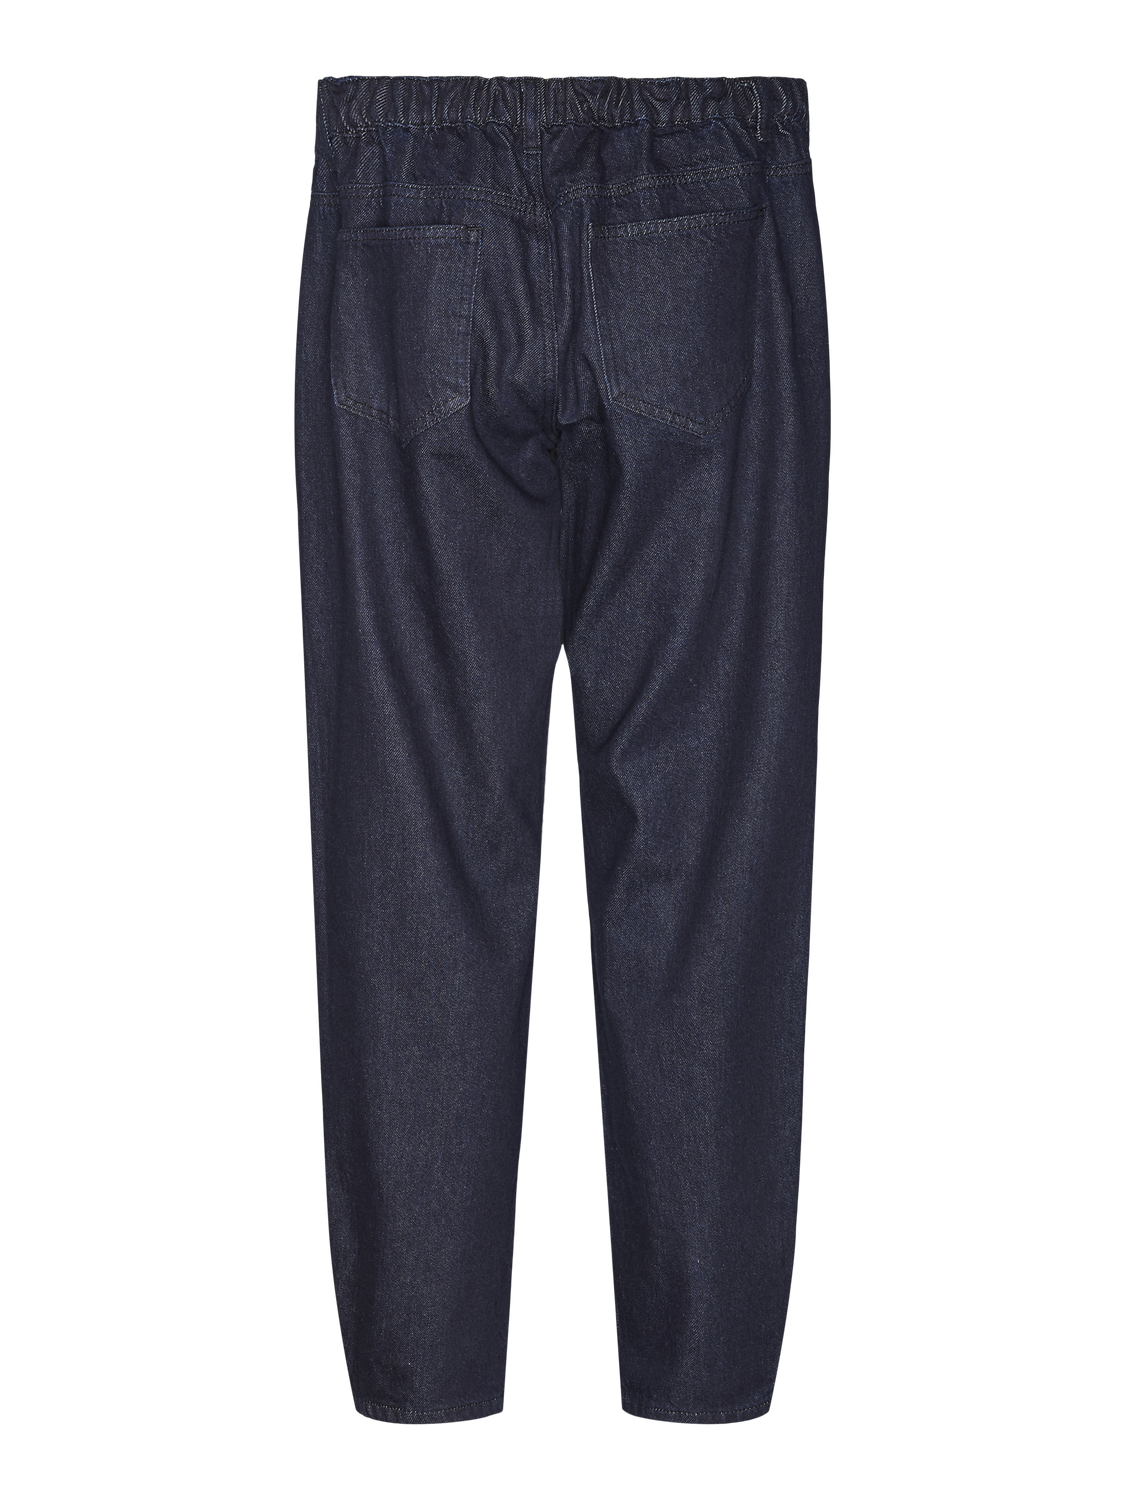 MAMA.LICIOUS Jeans Barrel fit Vita bassa -Dark Blue Denim - 20020036